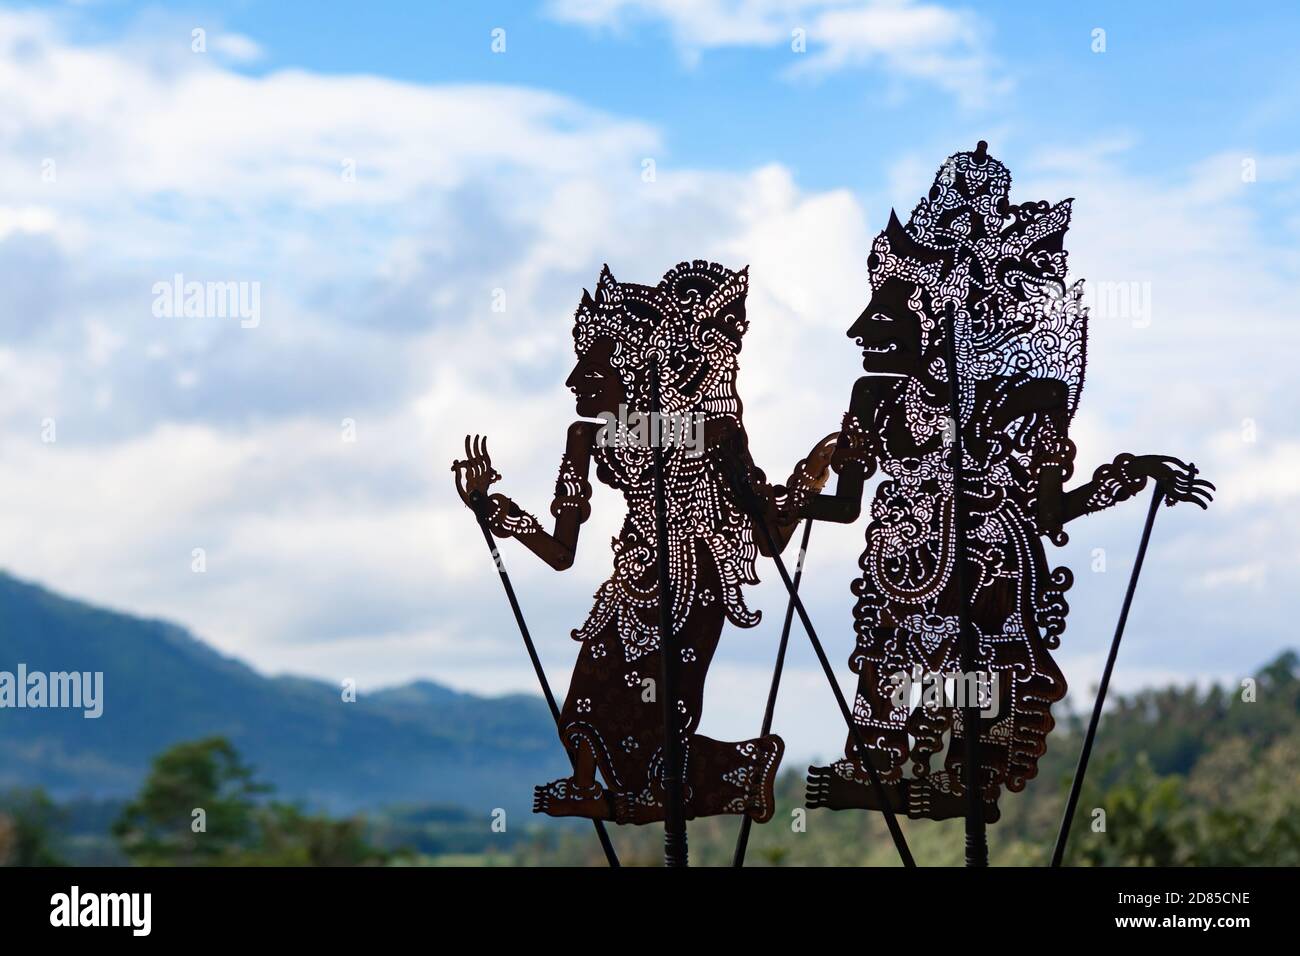 Schwarze Schattensilhouette alter traditioneller Marionetten von Bali Island - Wayang Kulit. Kultur, Religion, Kunstfestivals von balinesischem und indonesischem Volk. Stockfoto